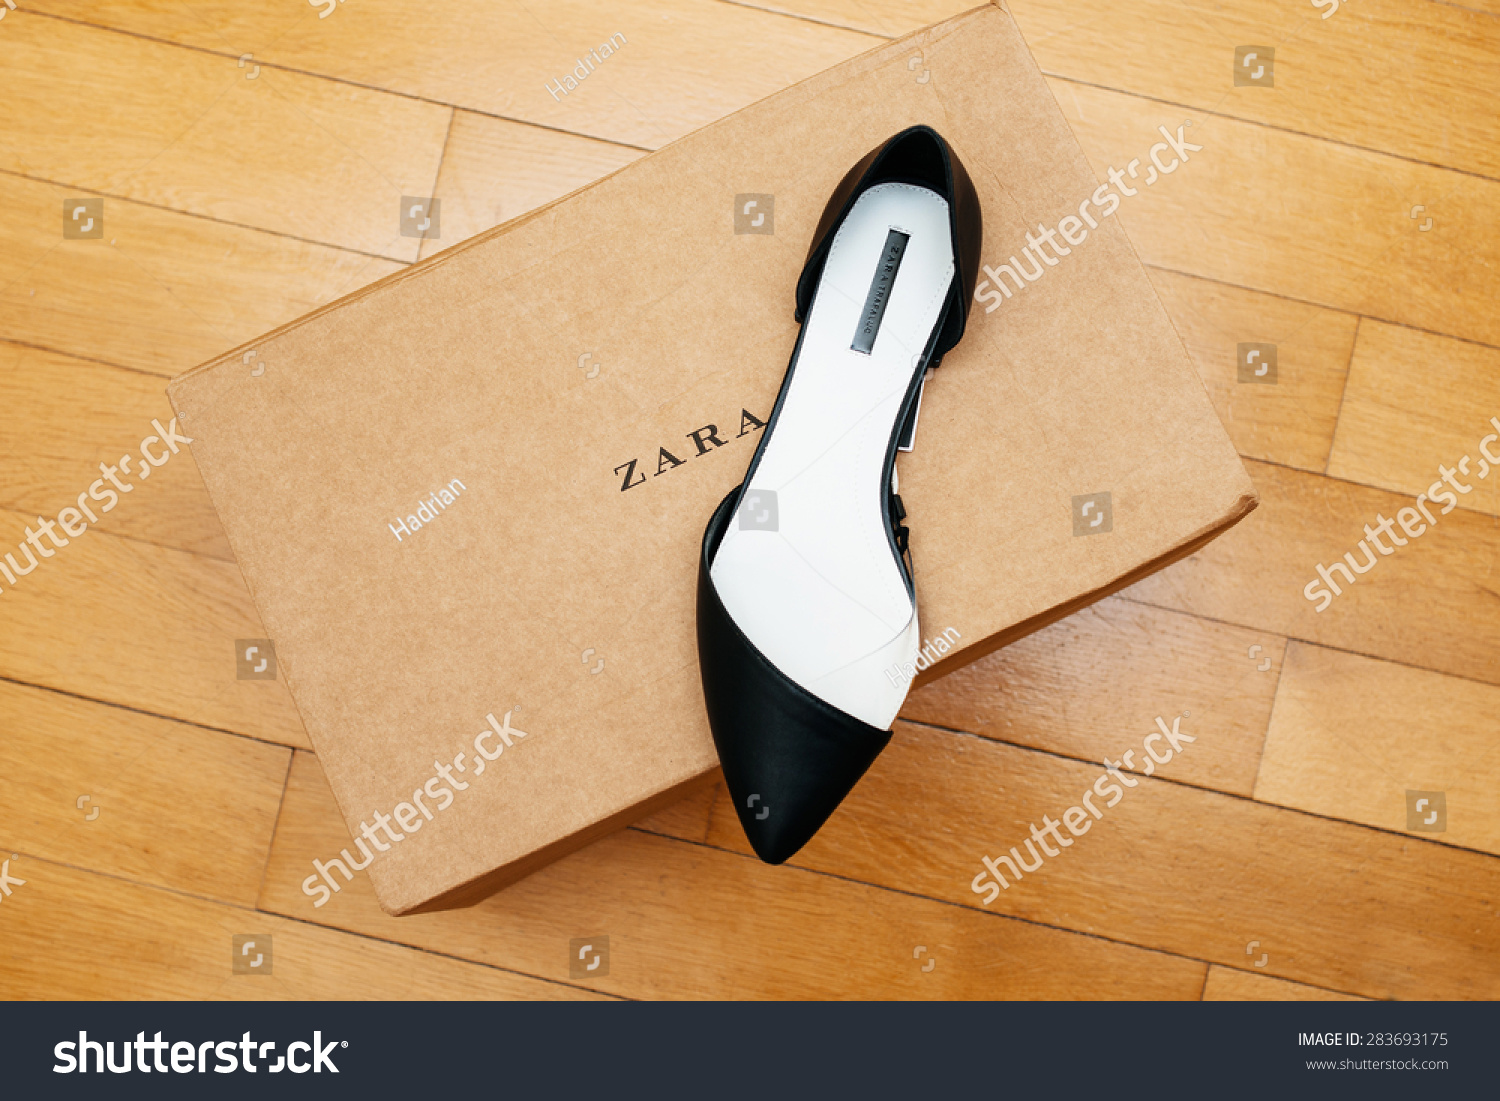 法国巴黎,2015年4月13日:ZARA鞋放在纸箱在